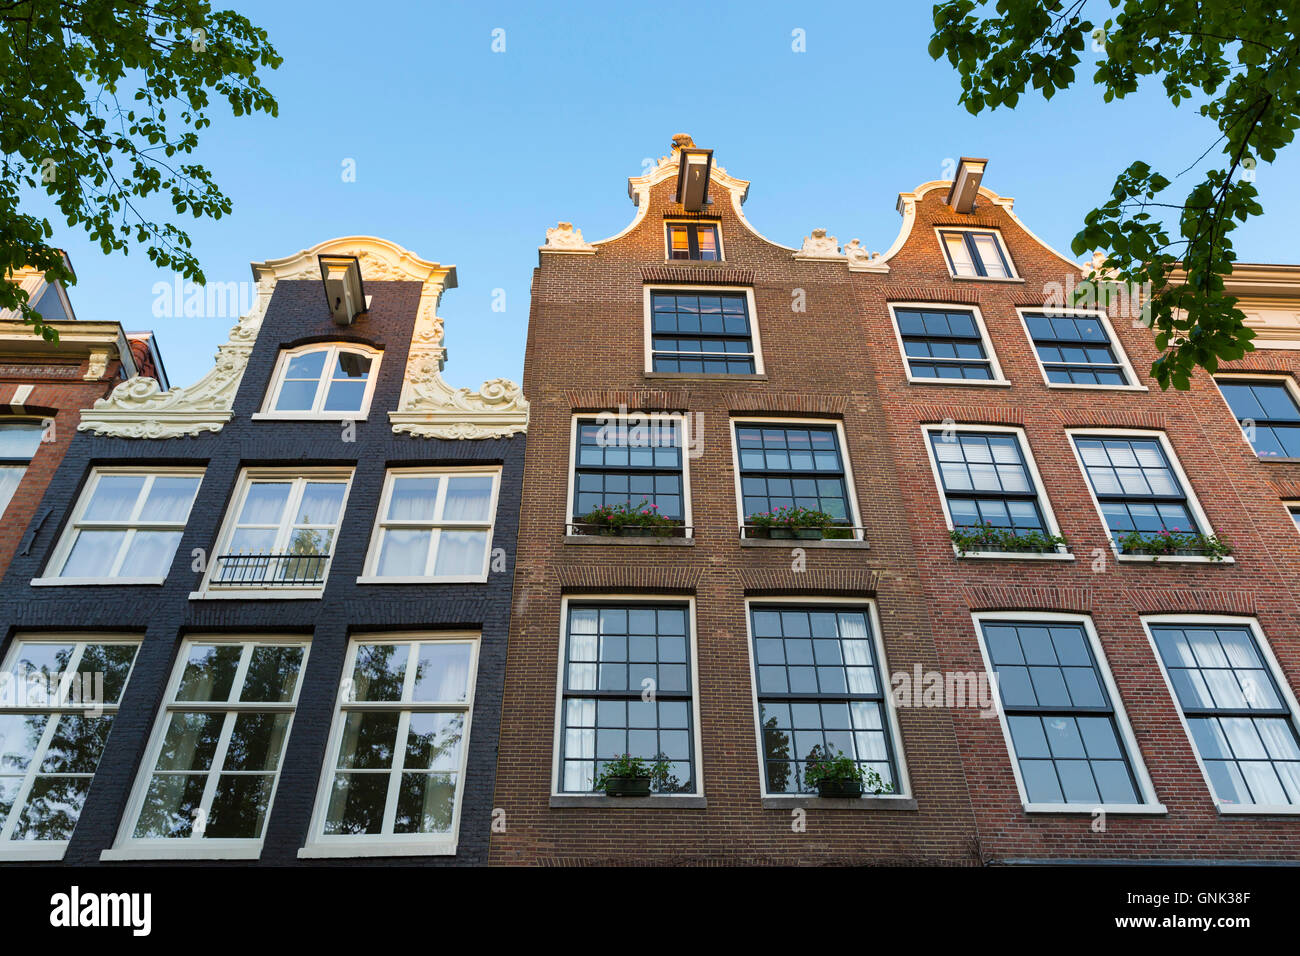 Pignons de l'architecture hollandaise traditionnelle des bâtiments au bord du canal Prinsengracht, à Amsterdam, Holland Banque D'Images